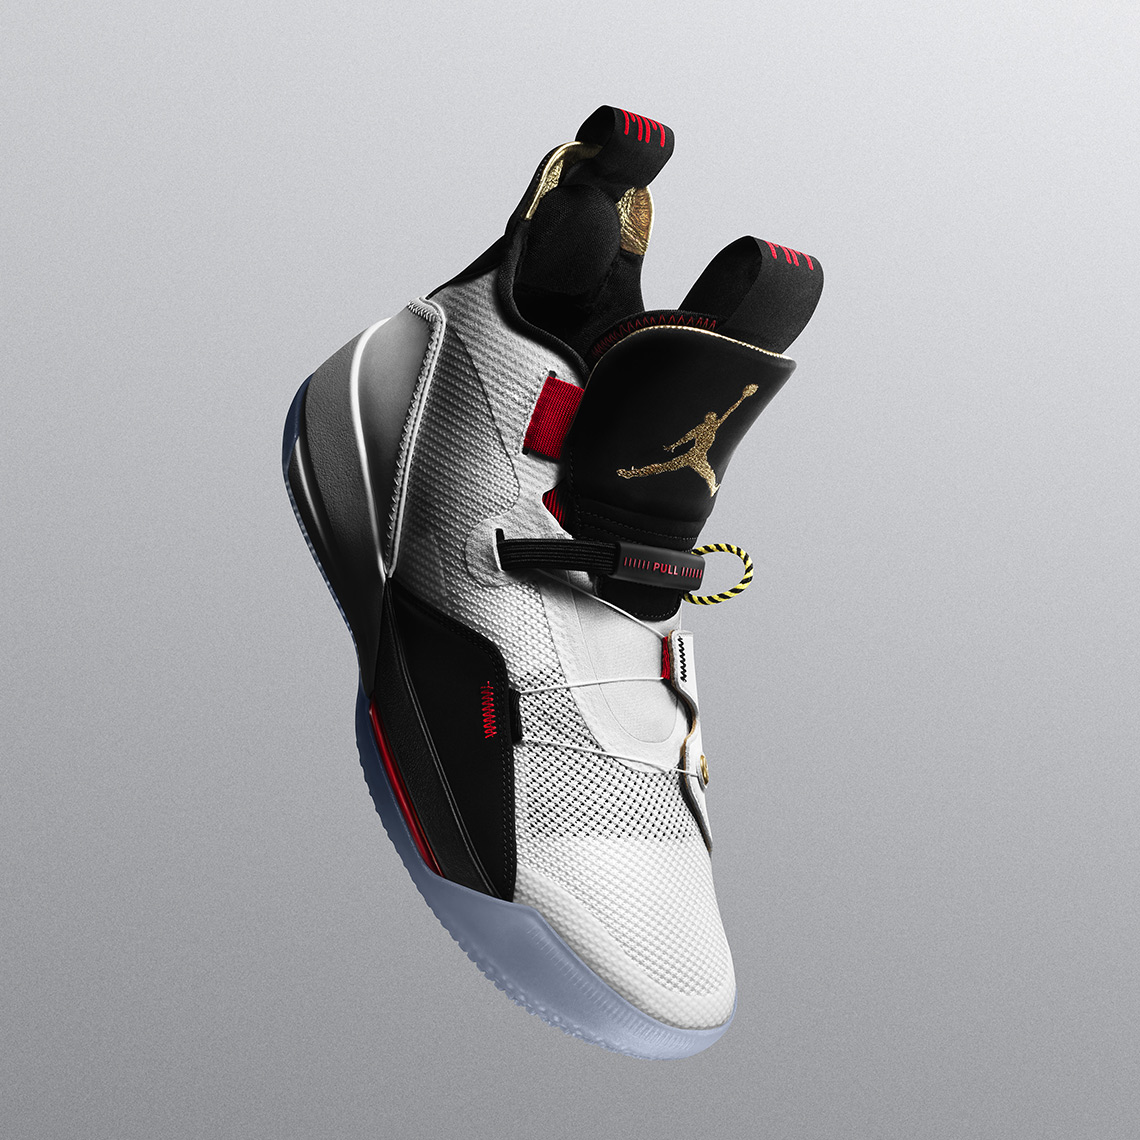 Air Jordan 33 Release Date 